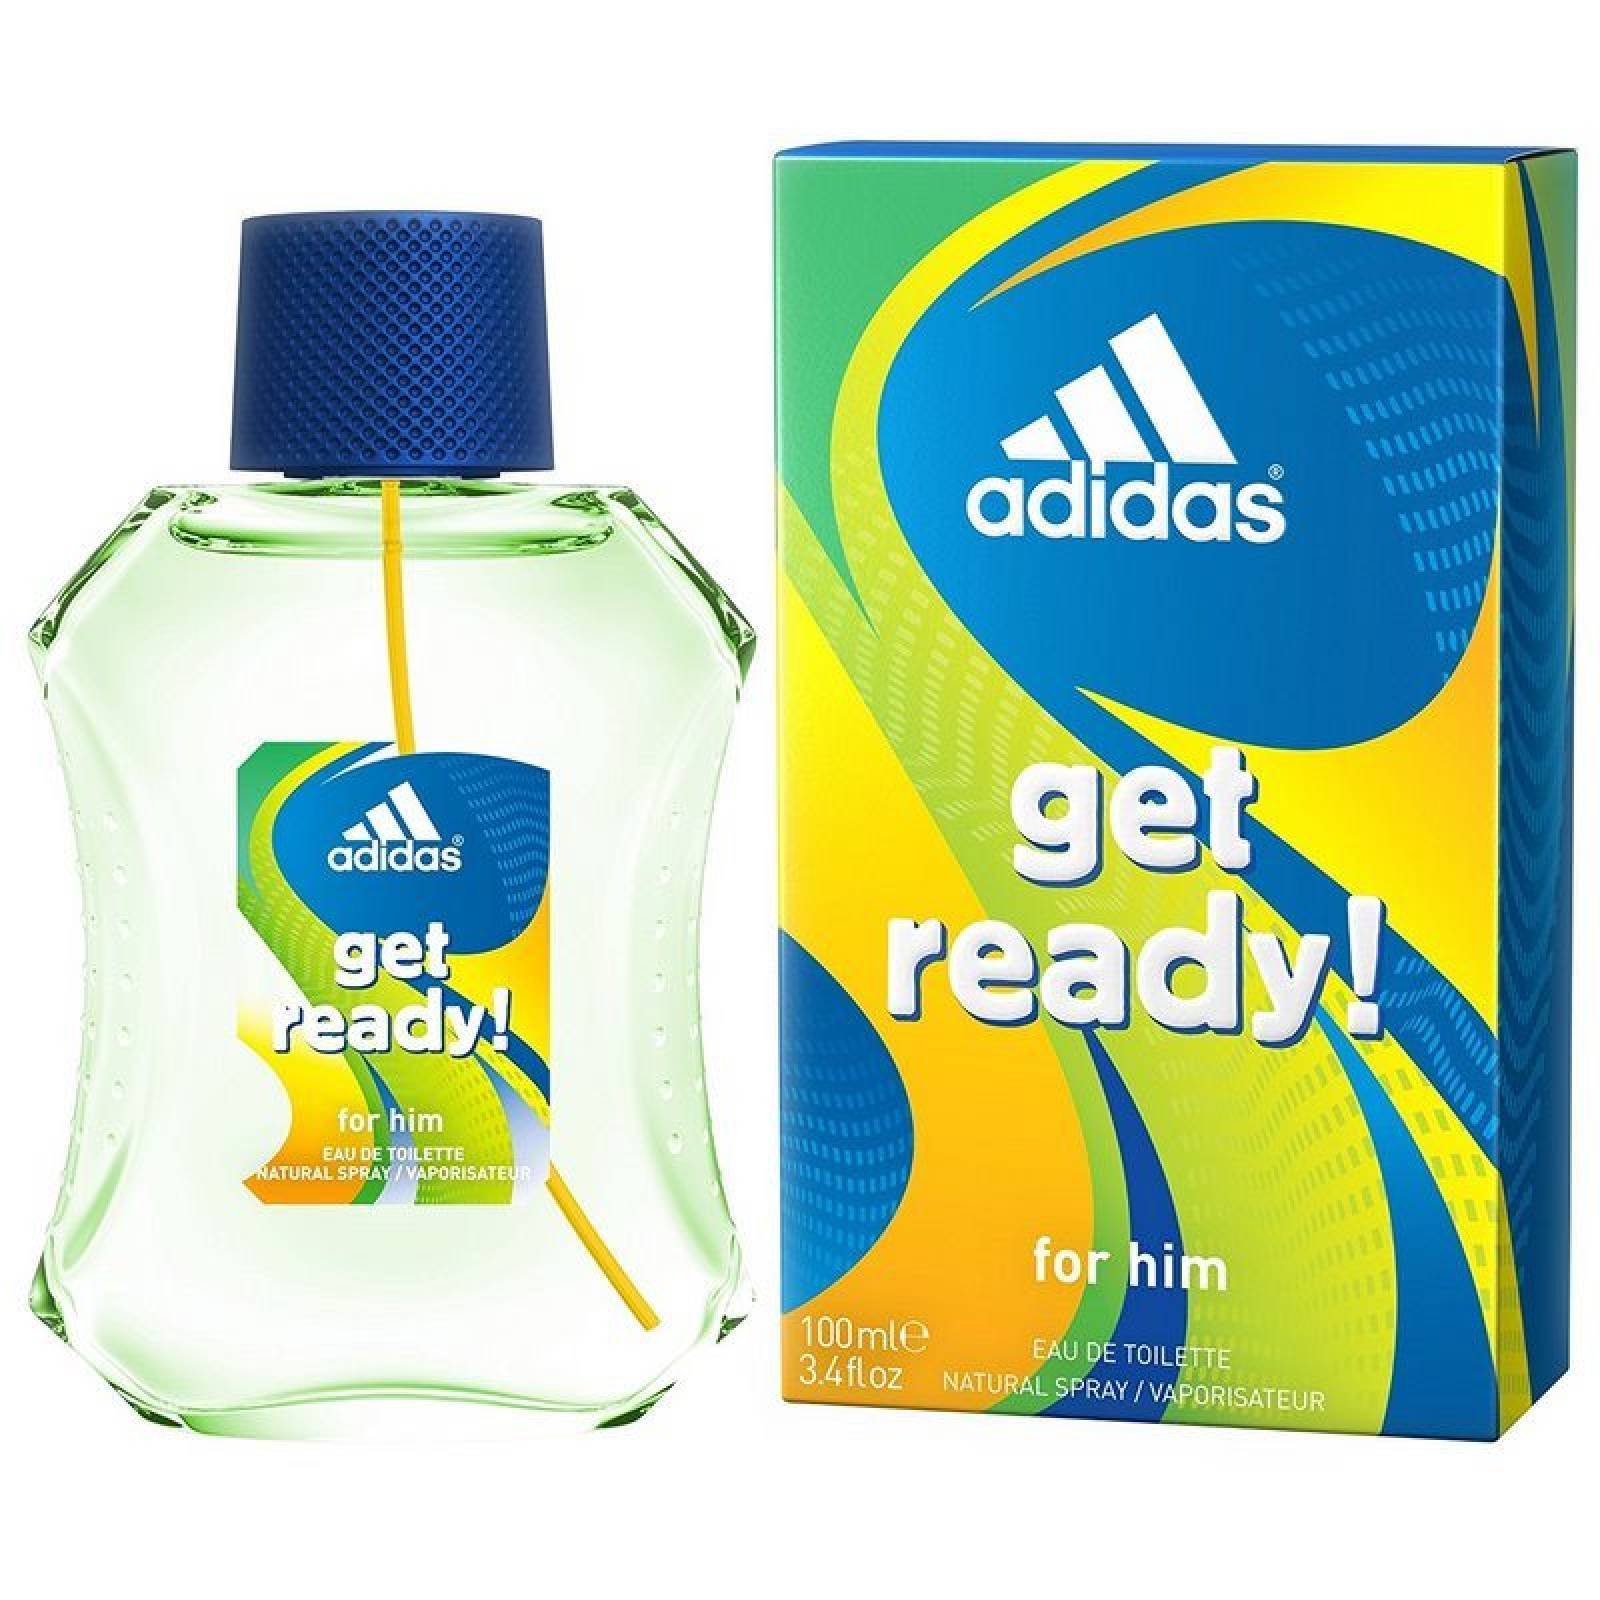 Adidas Get Ready 100 ml Edt Spray de Adidas para Caballero